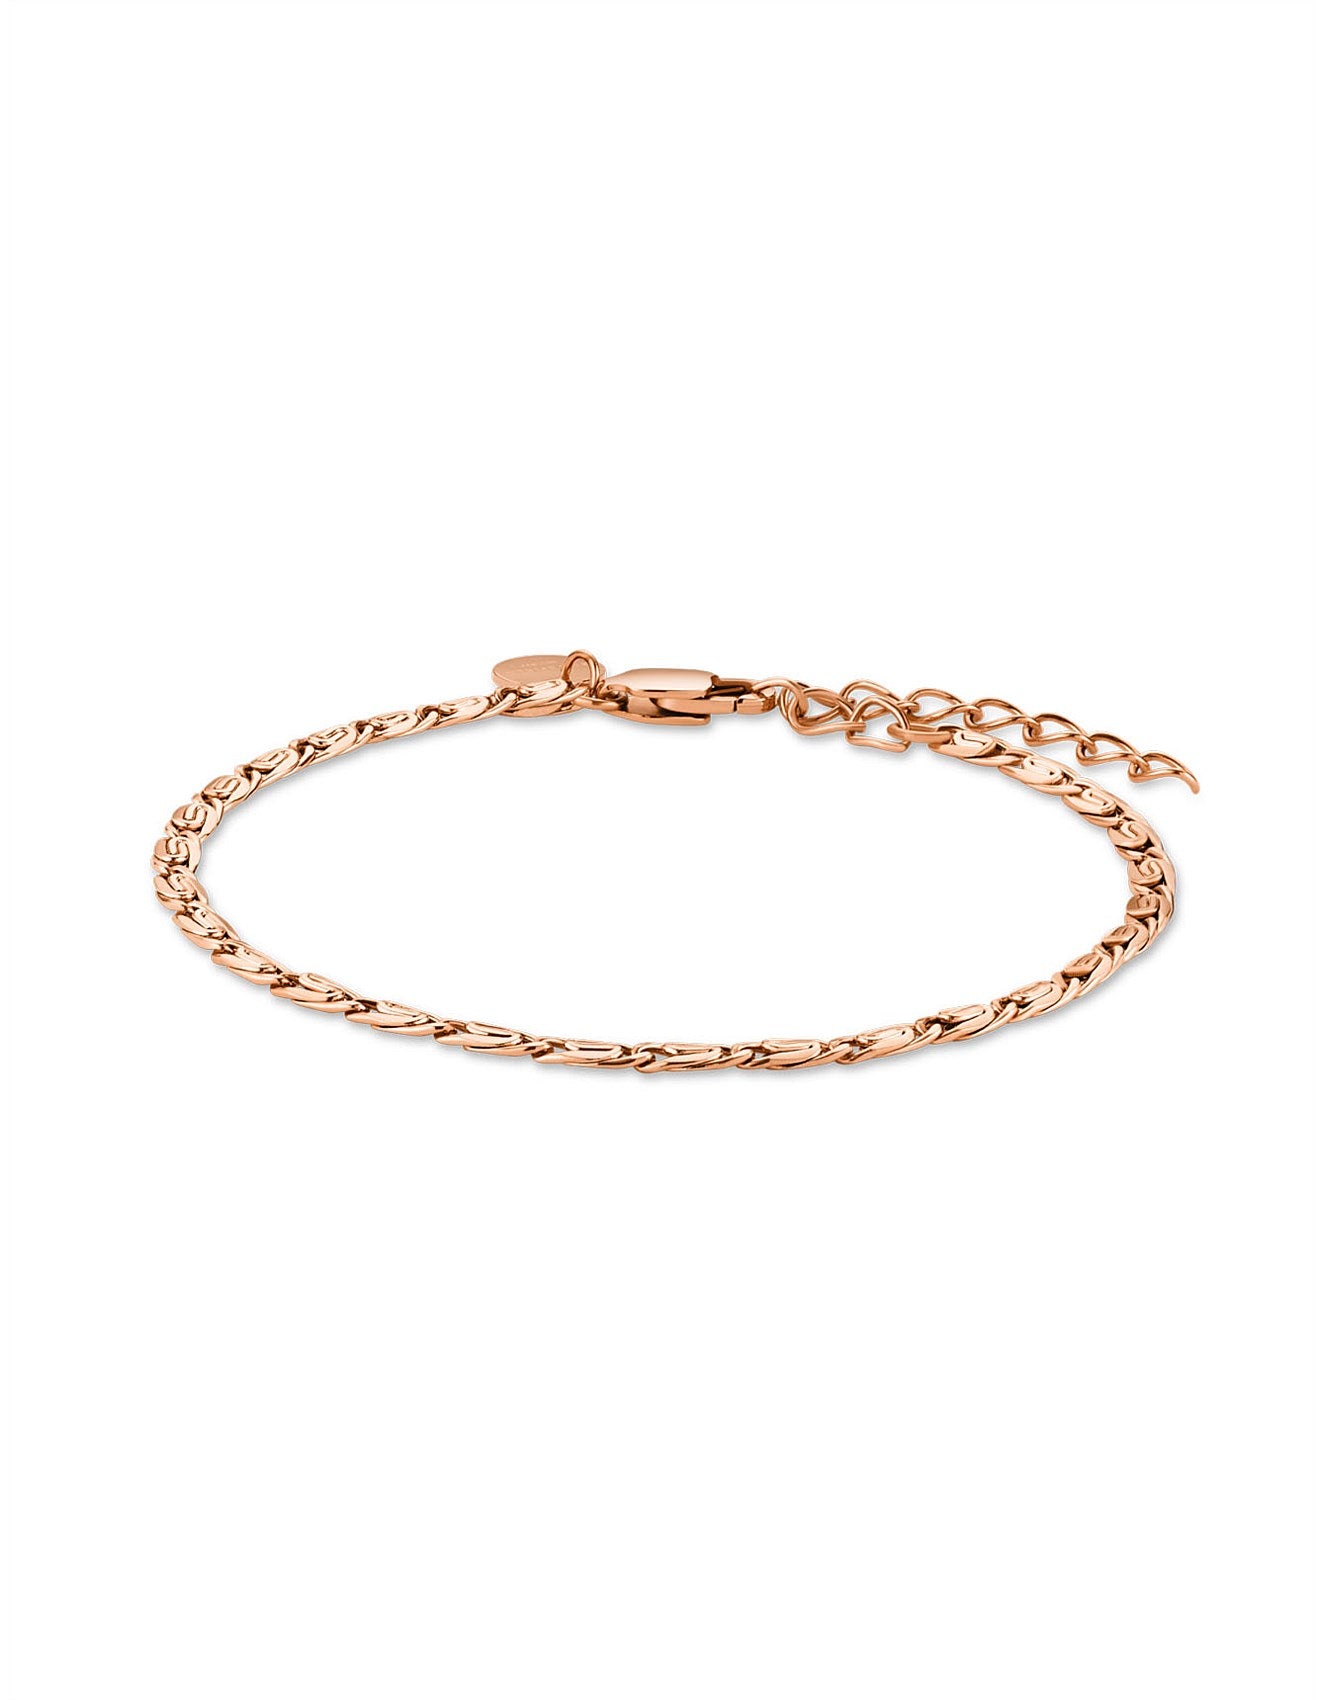 Vintage Chain Bracelet - Rose Gold - J435